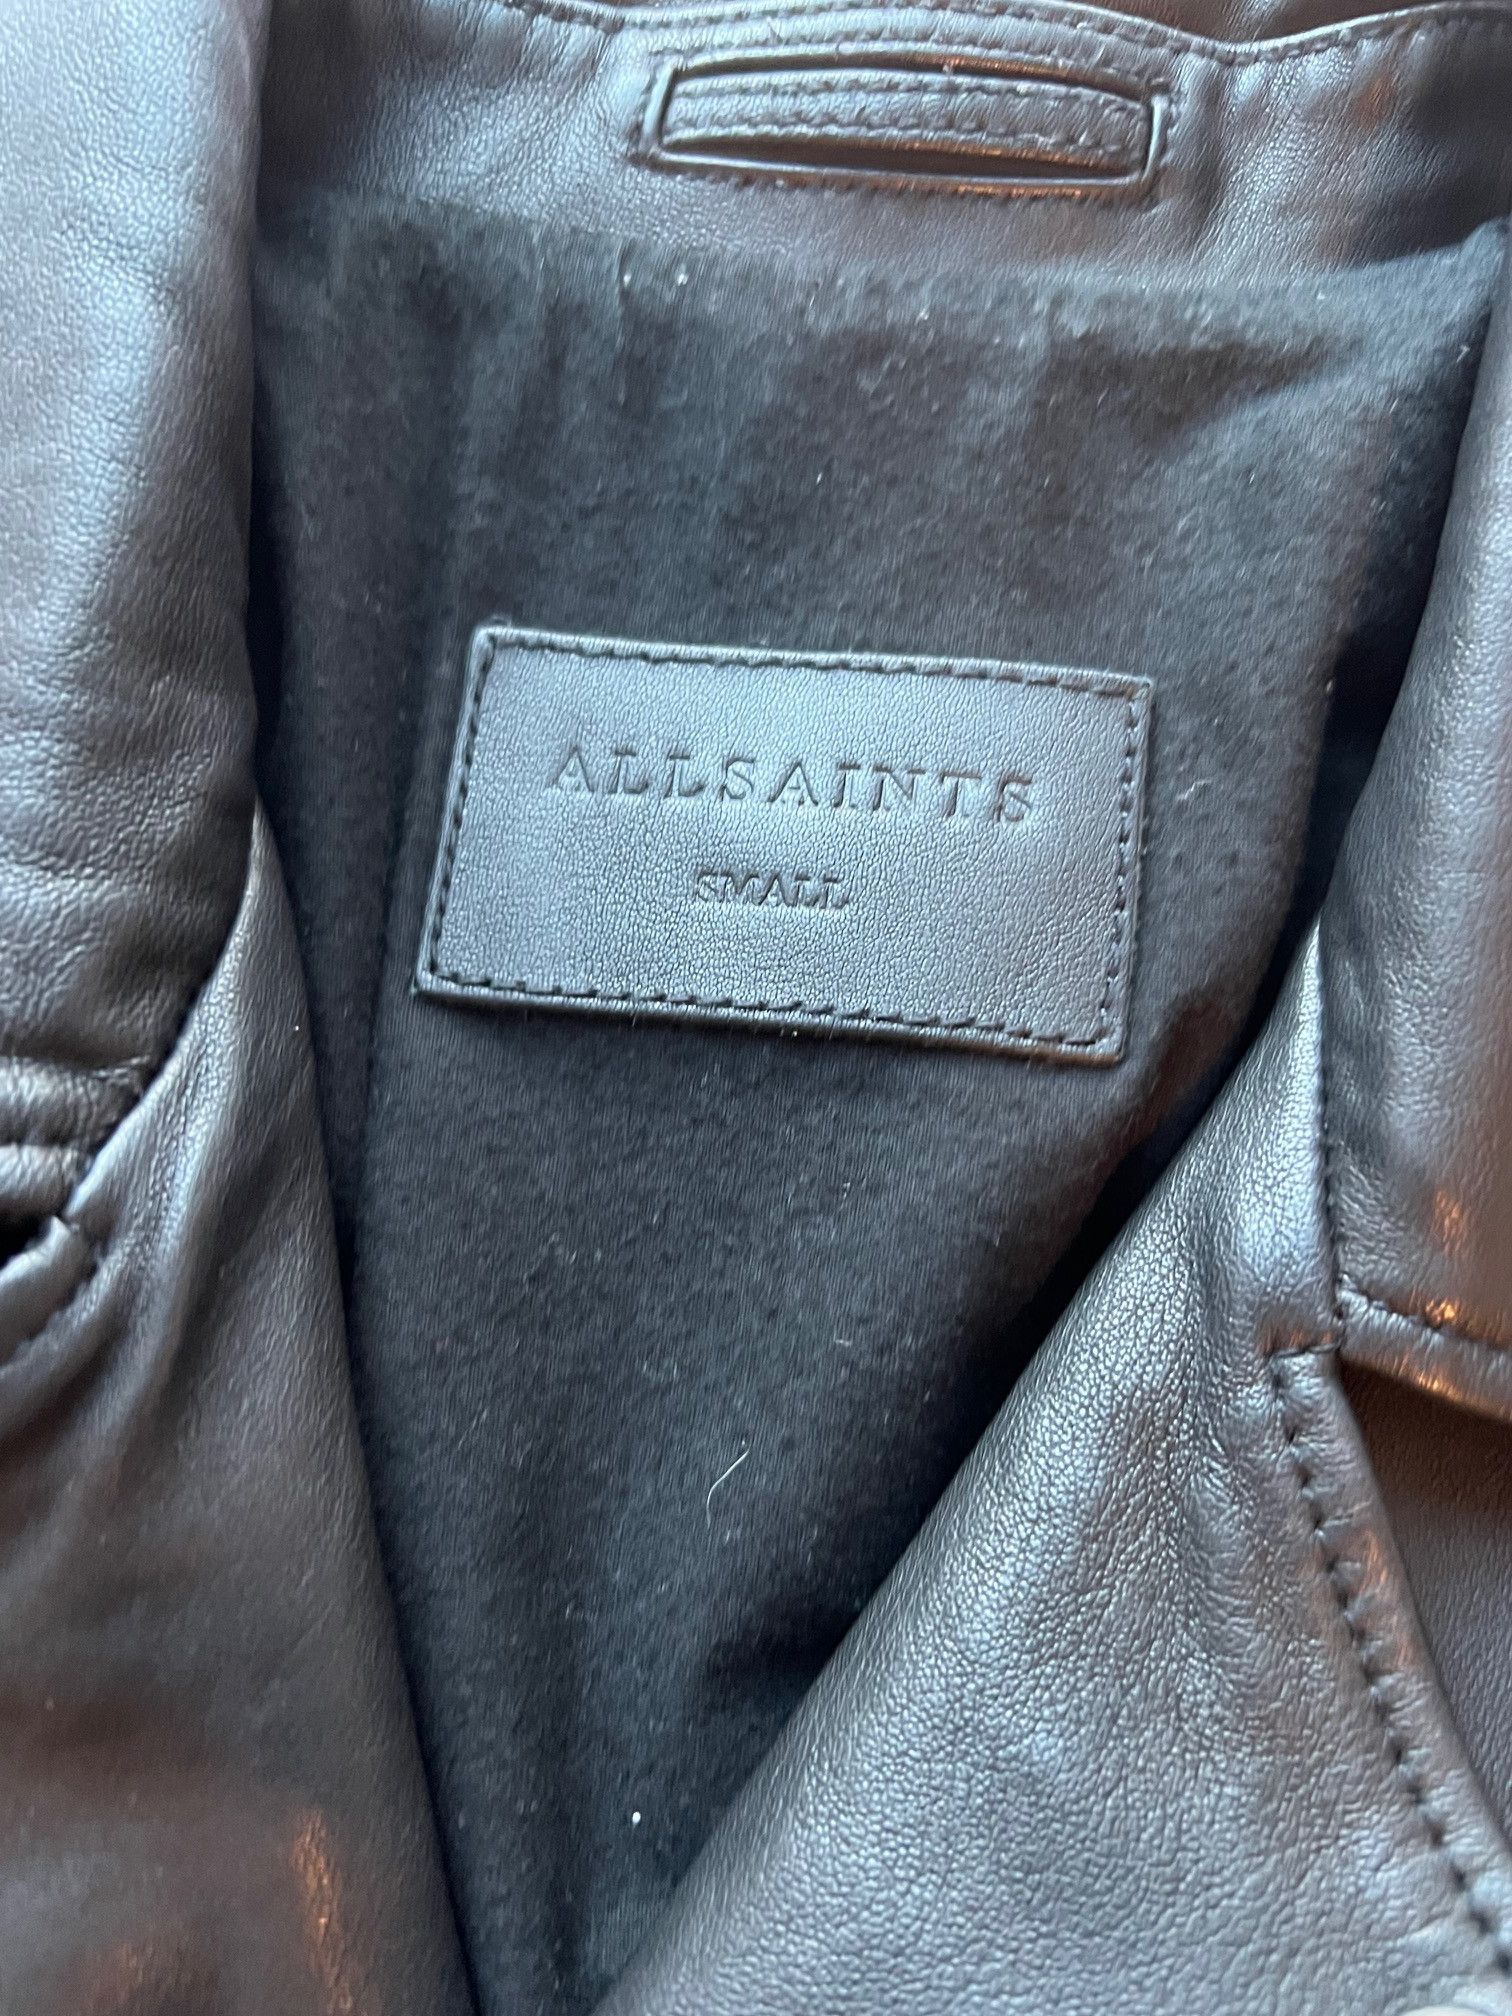 Allsaints All Saints Leather Jacket Size US S / EU 44-46 / 1 - 3 Preview